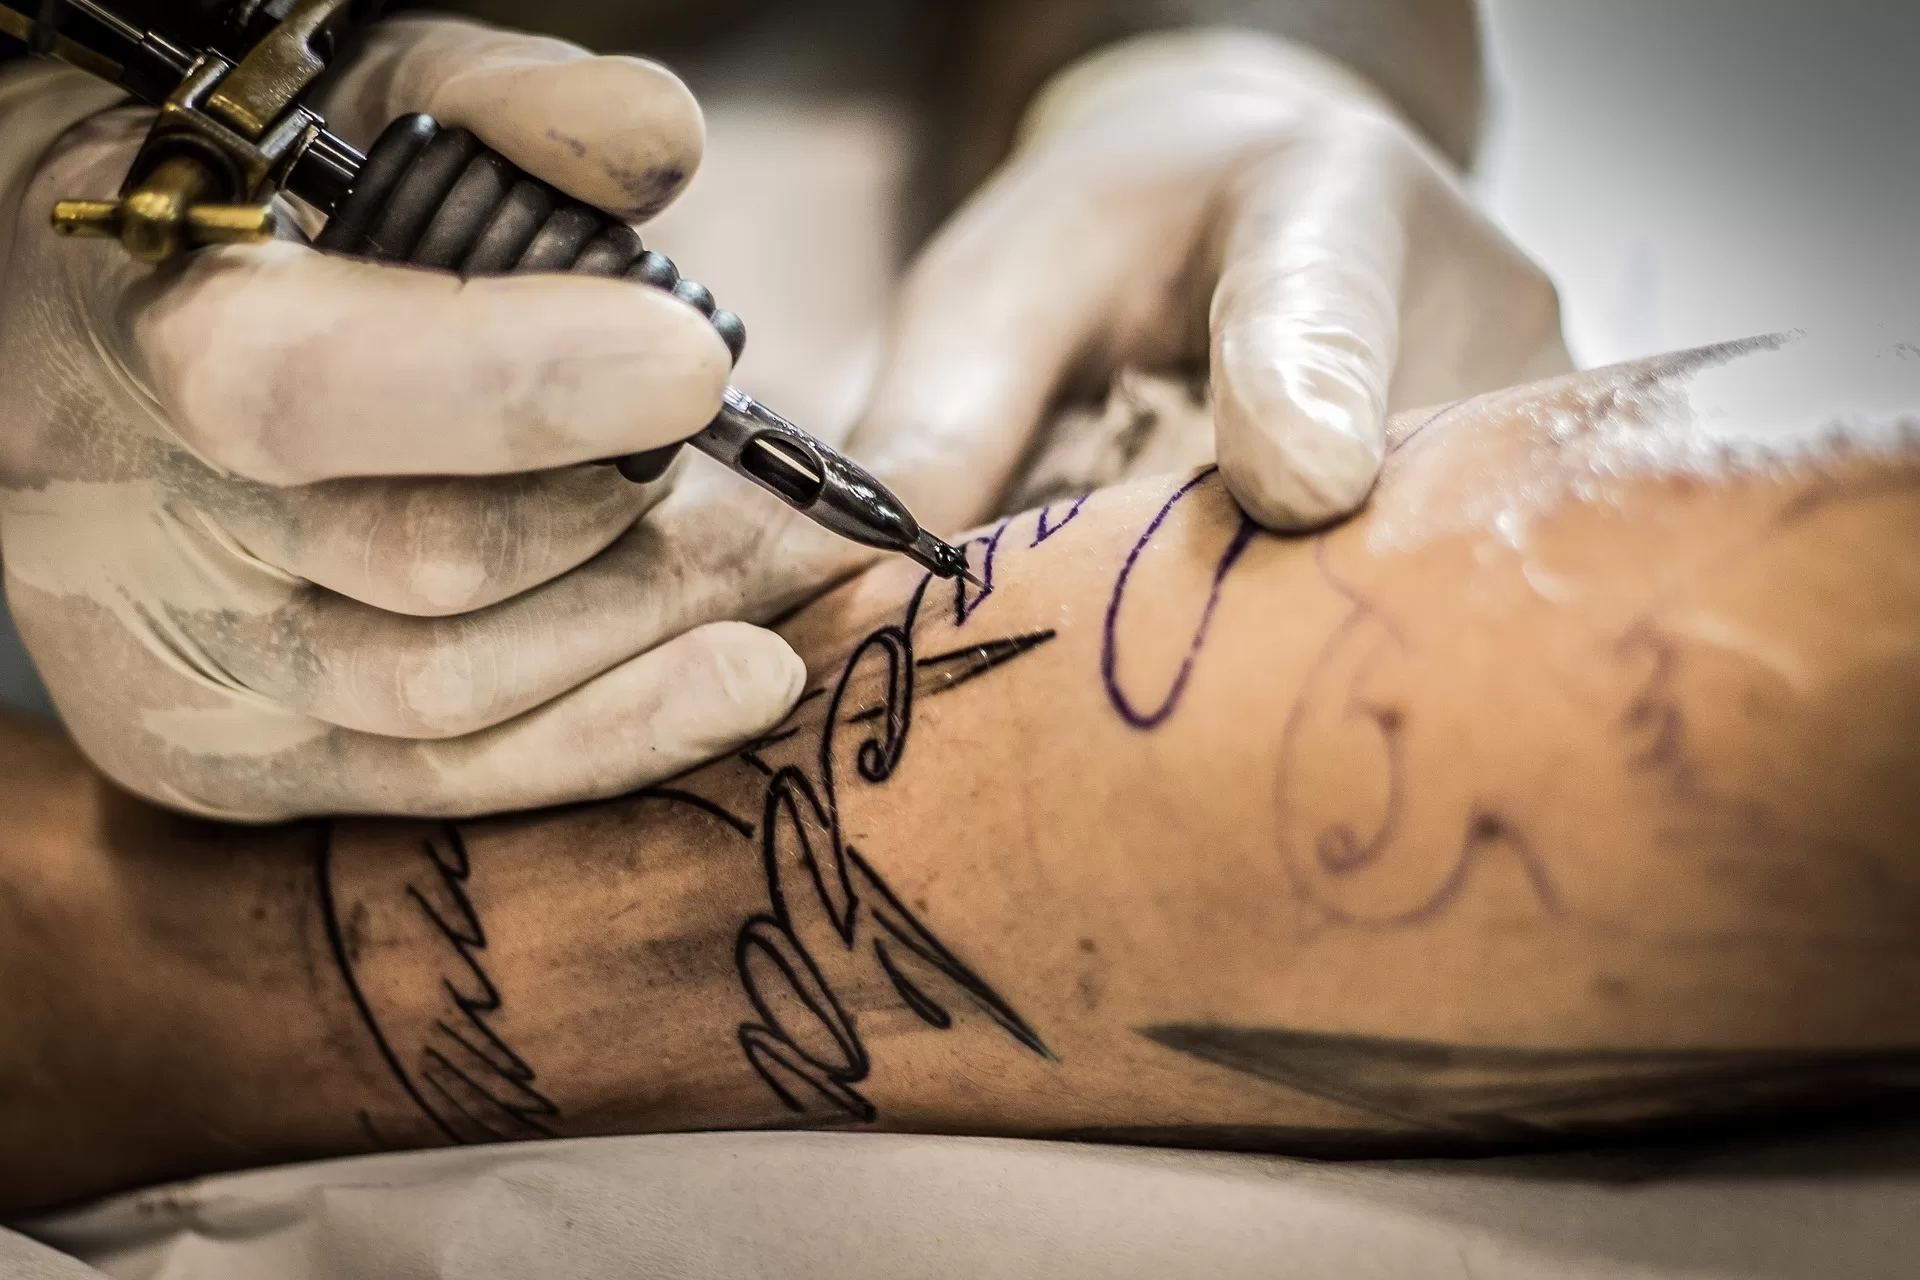 Participantes do GPWeek poderão se tatuar no festival (Foto: Pixabay)